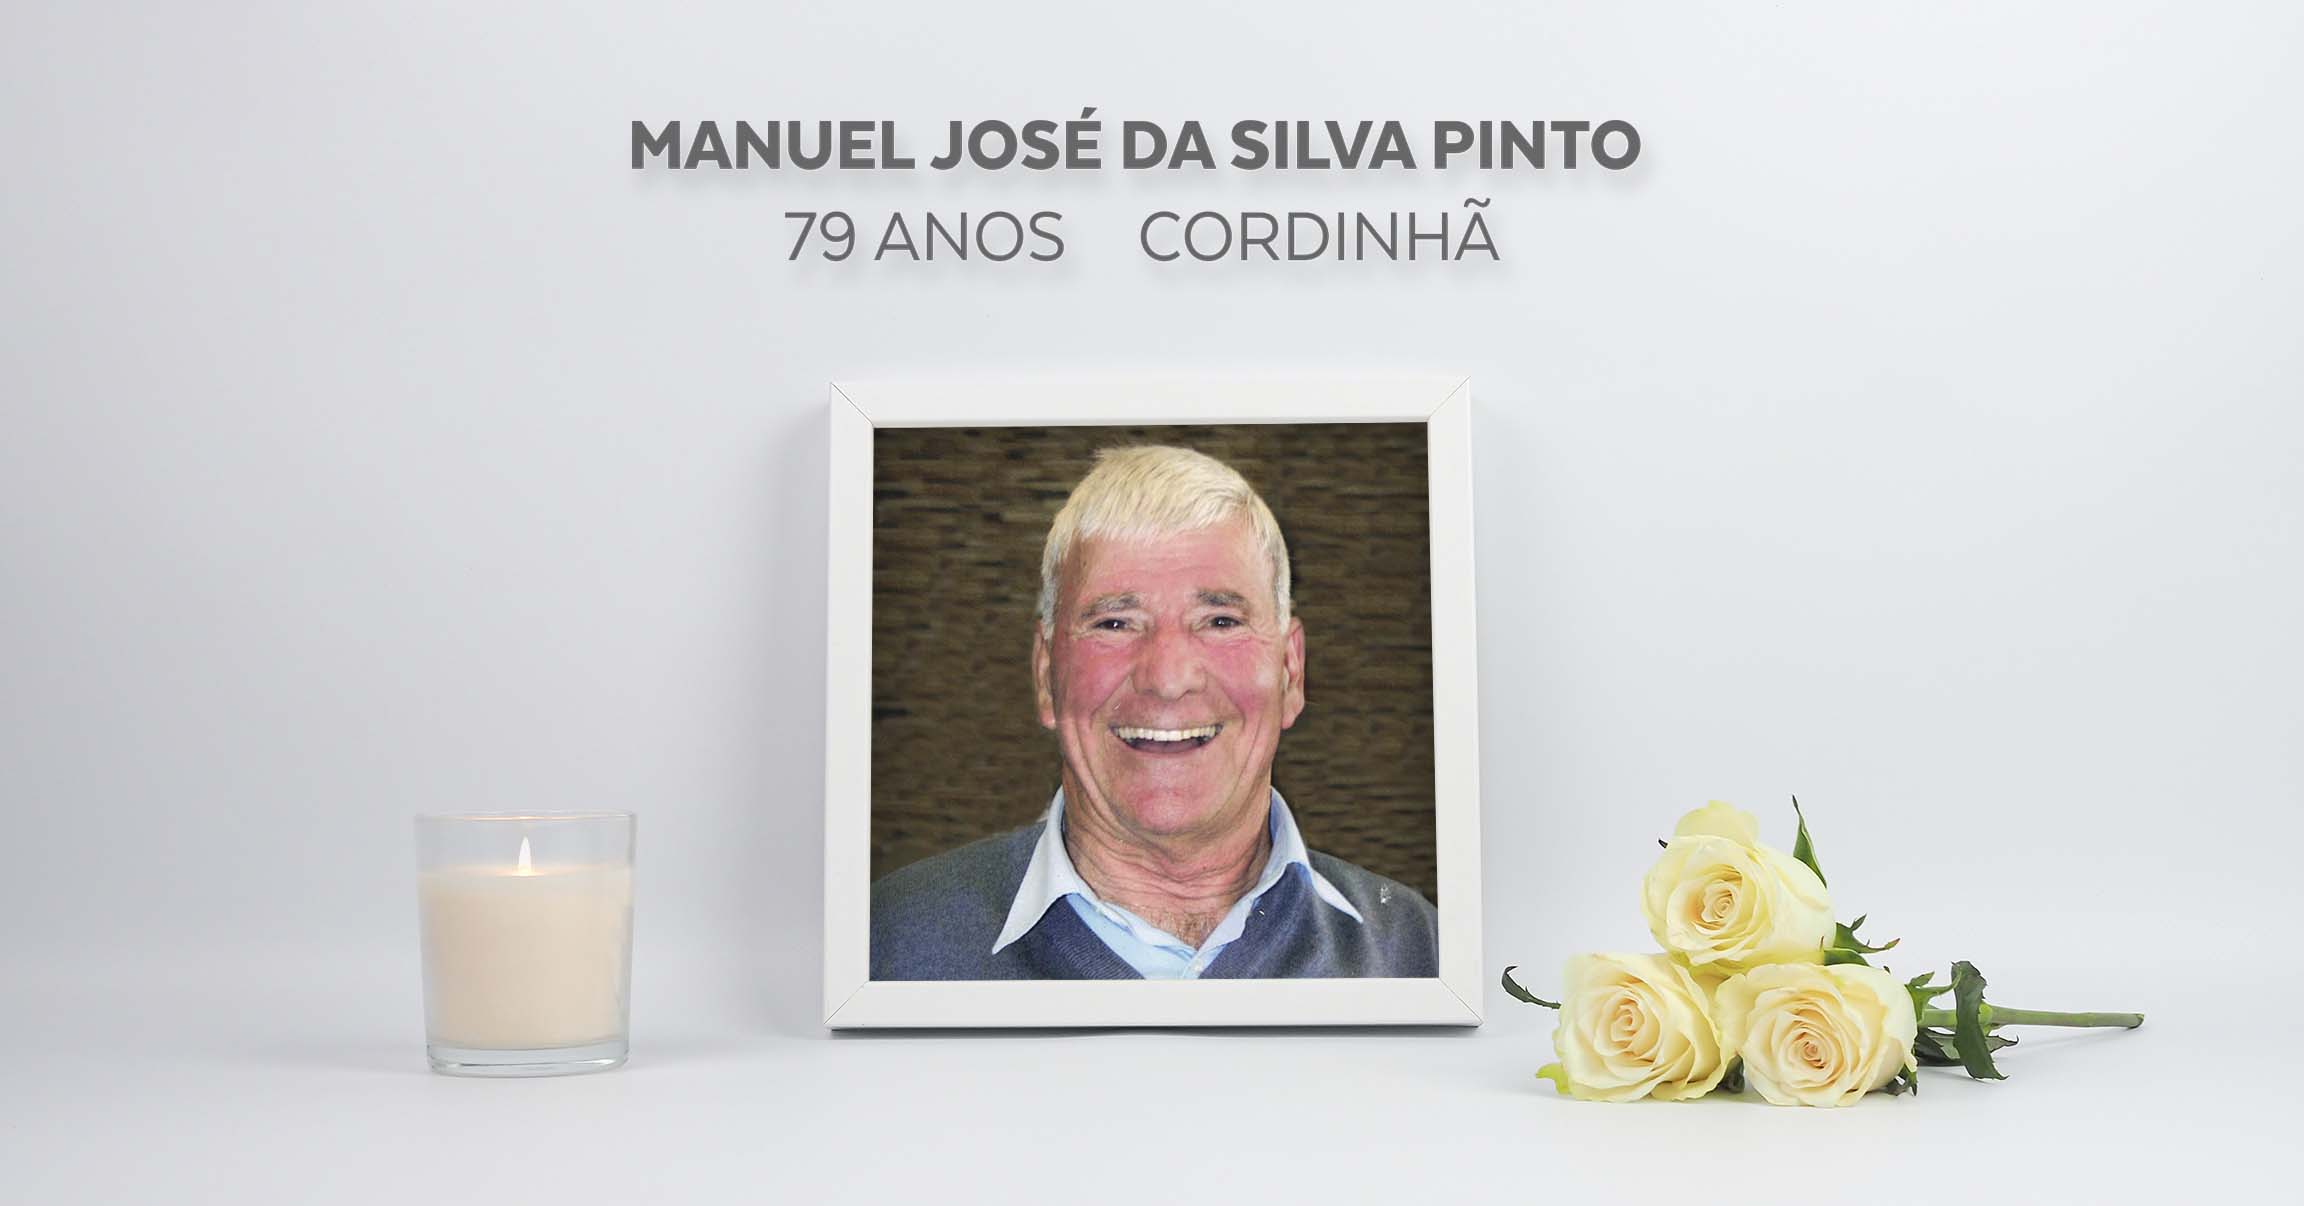 Manuel José da Silva Pinto